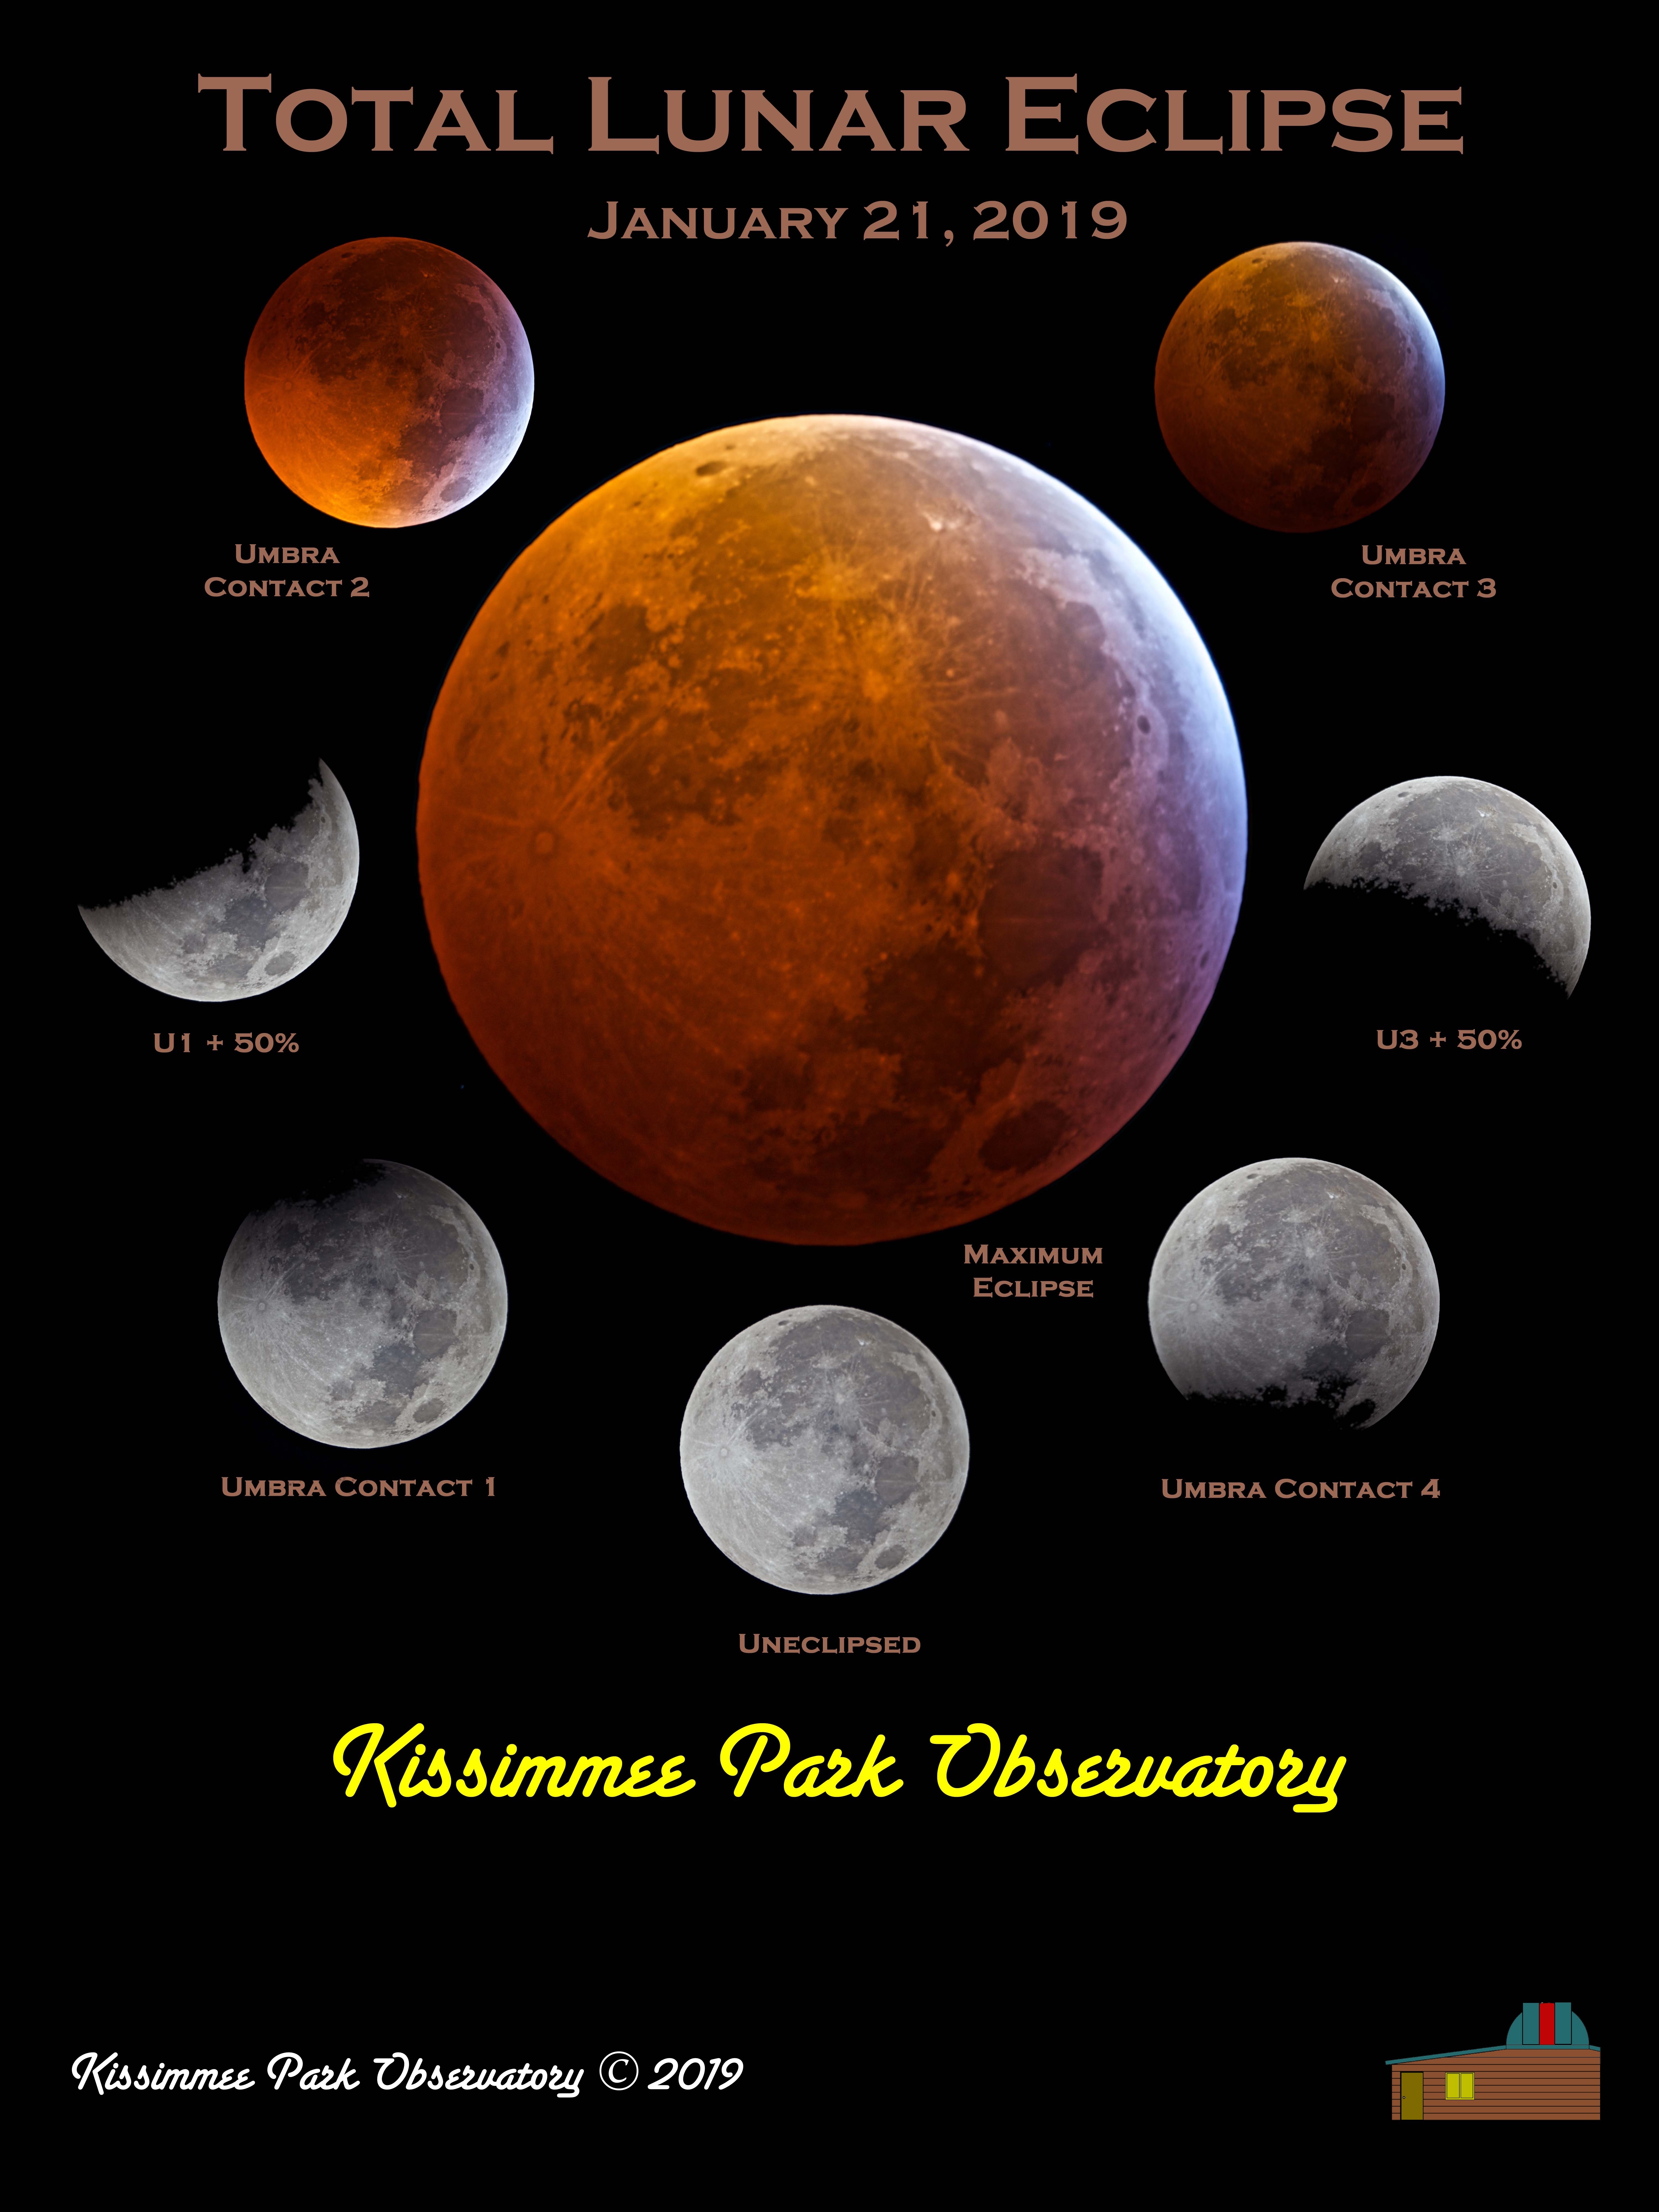 digital-image-total-lunar-eclipse-of-1-21-2019-kissimmee-park